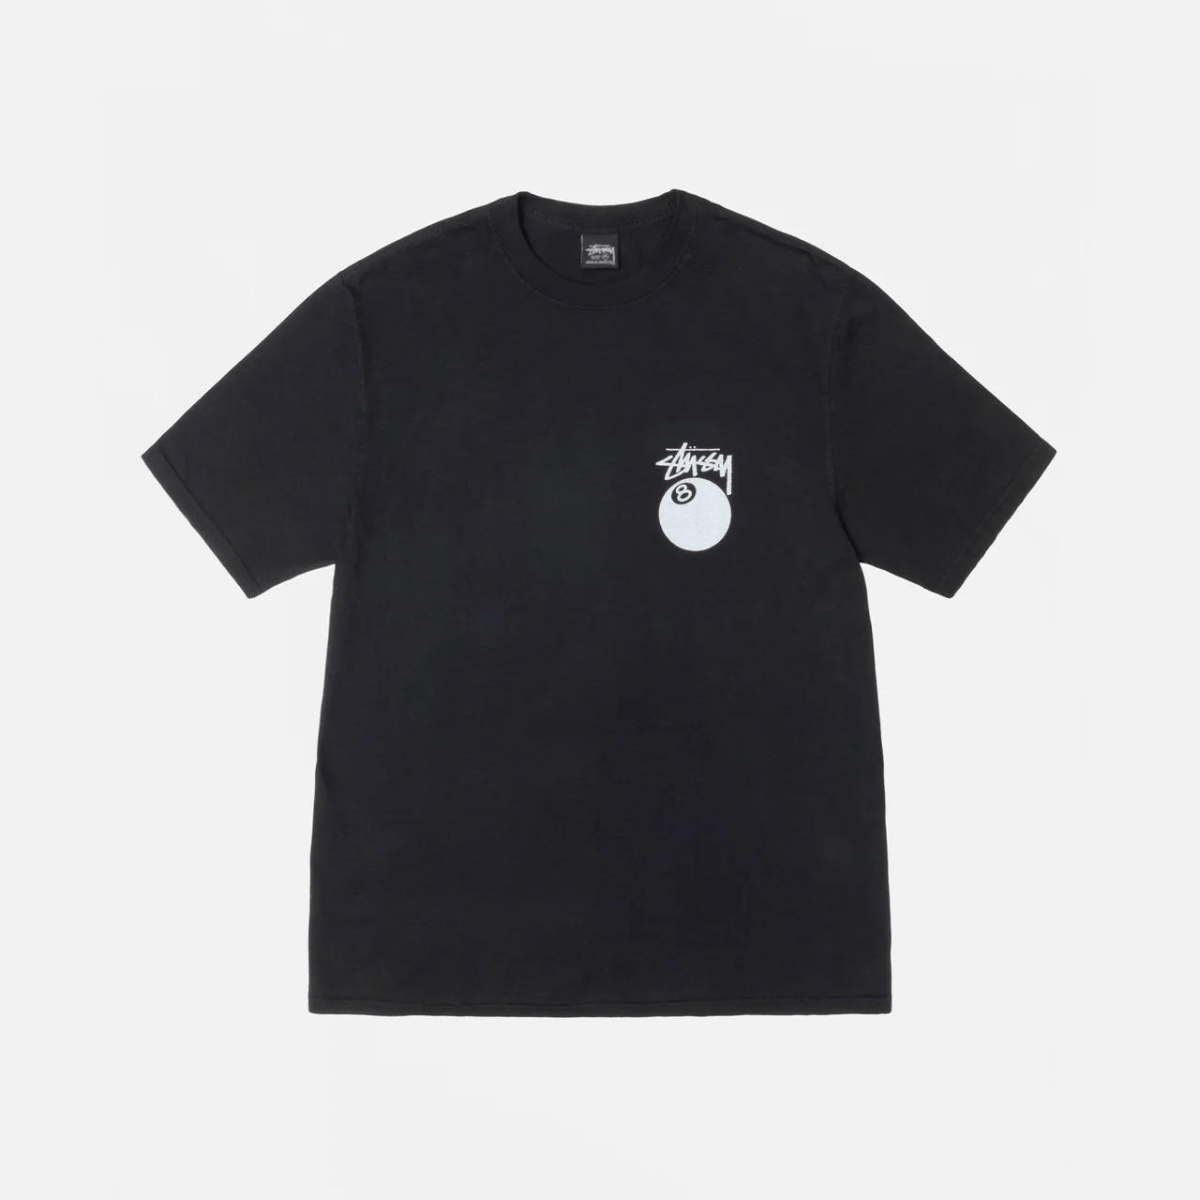 Stüssy 8 Ball Pigment Dyed “Black” T-shirt T-Shirts Stussy